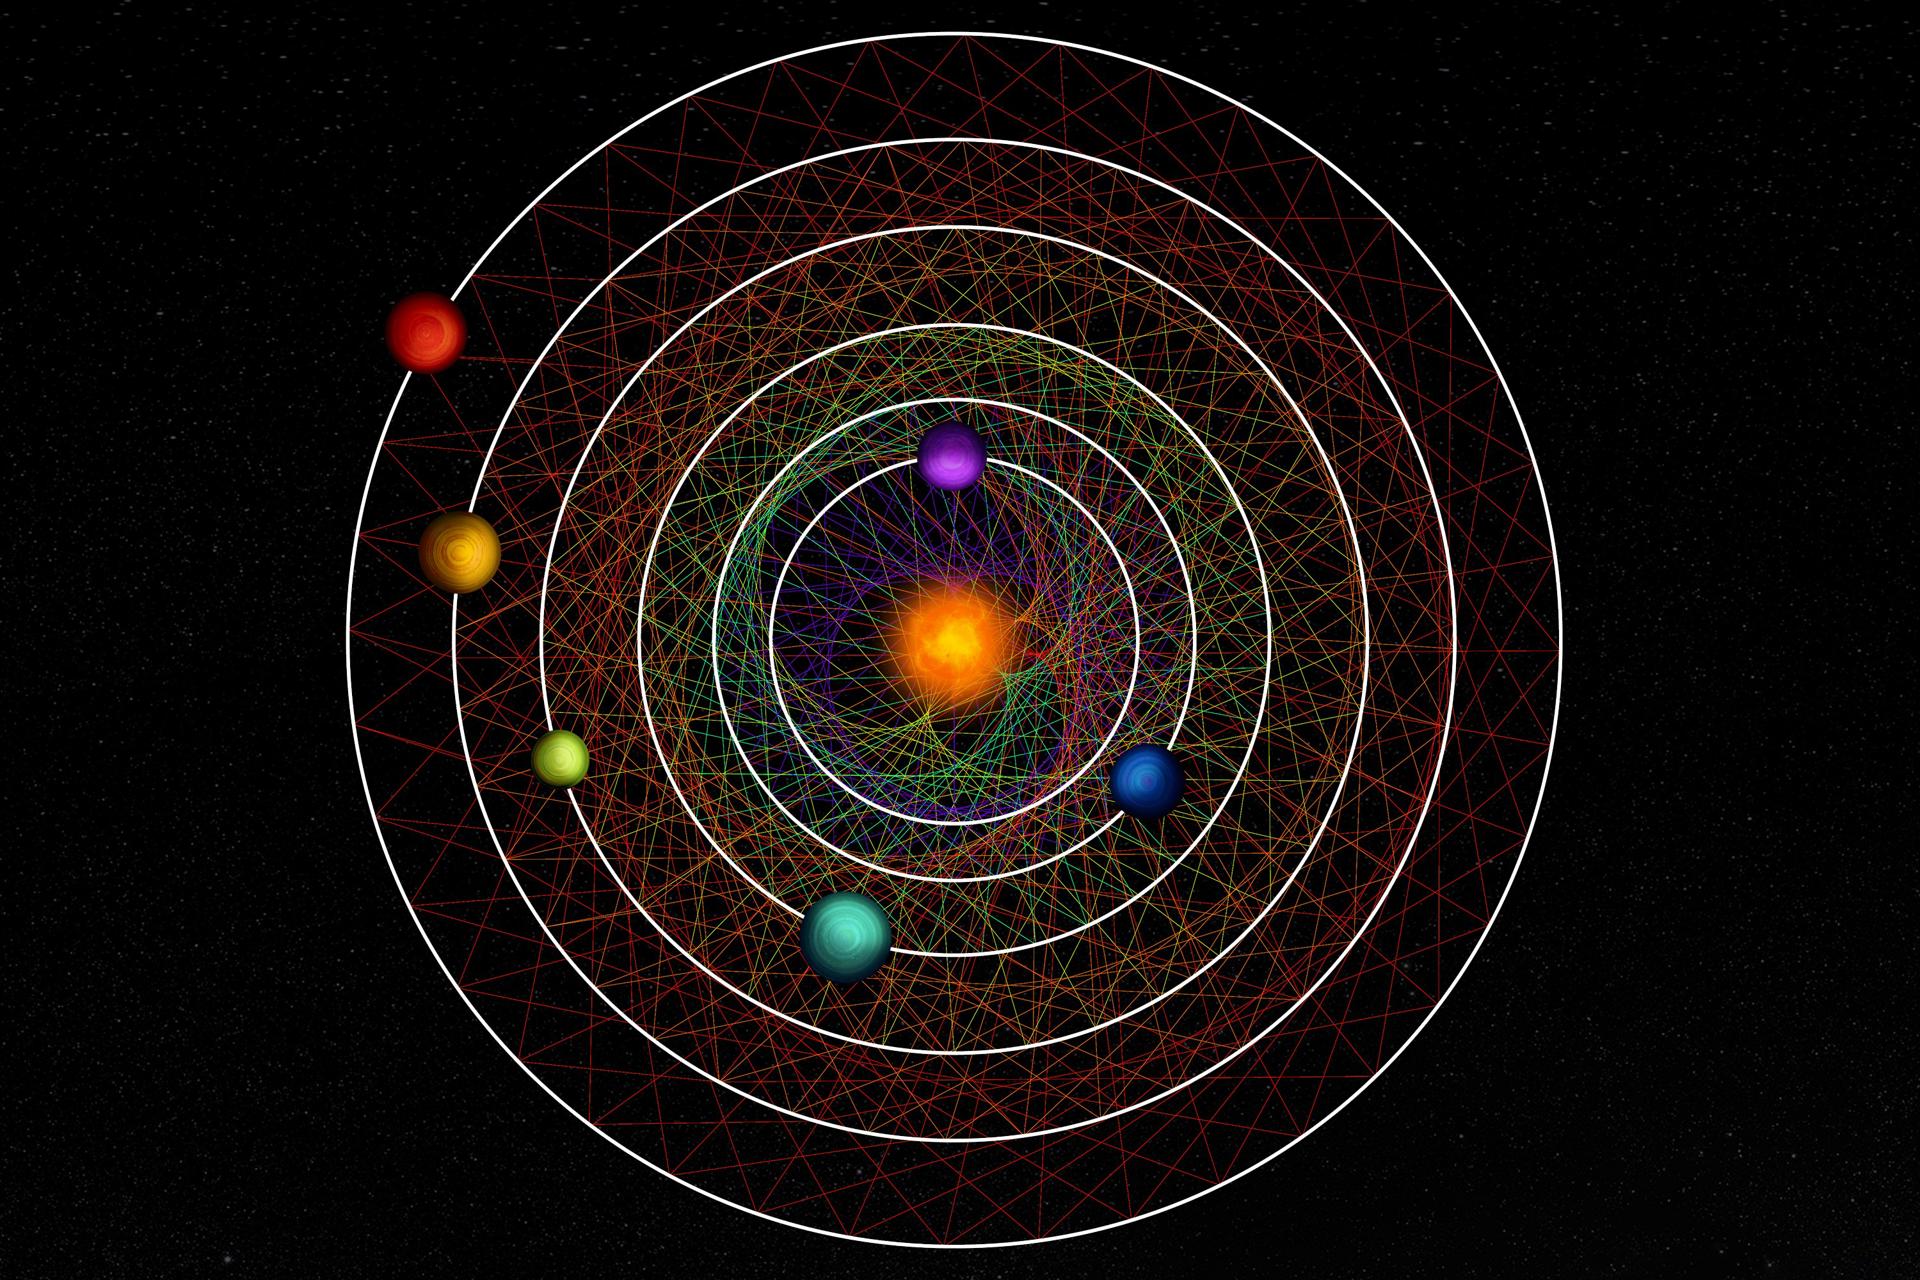 Los seis planetas del sistema HD 110067 crean juntos un patrón geométrico fascinante debido a su cadena de resonancia. Crédito: Thibaut Roger (NCCR PlanetS).